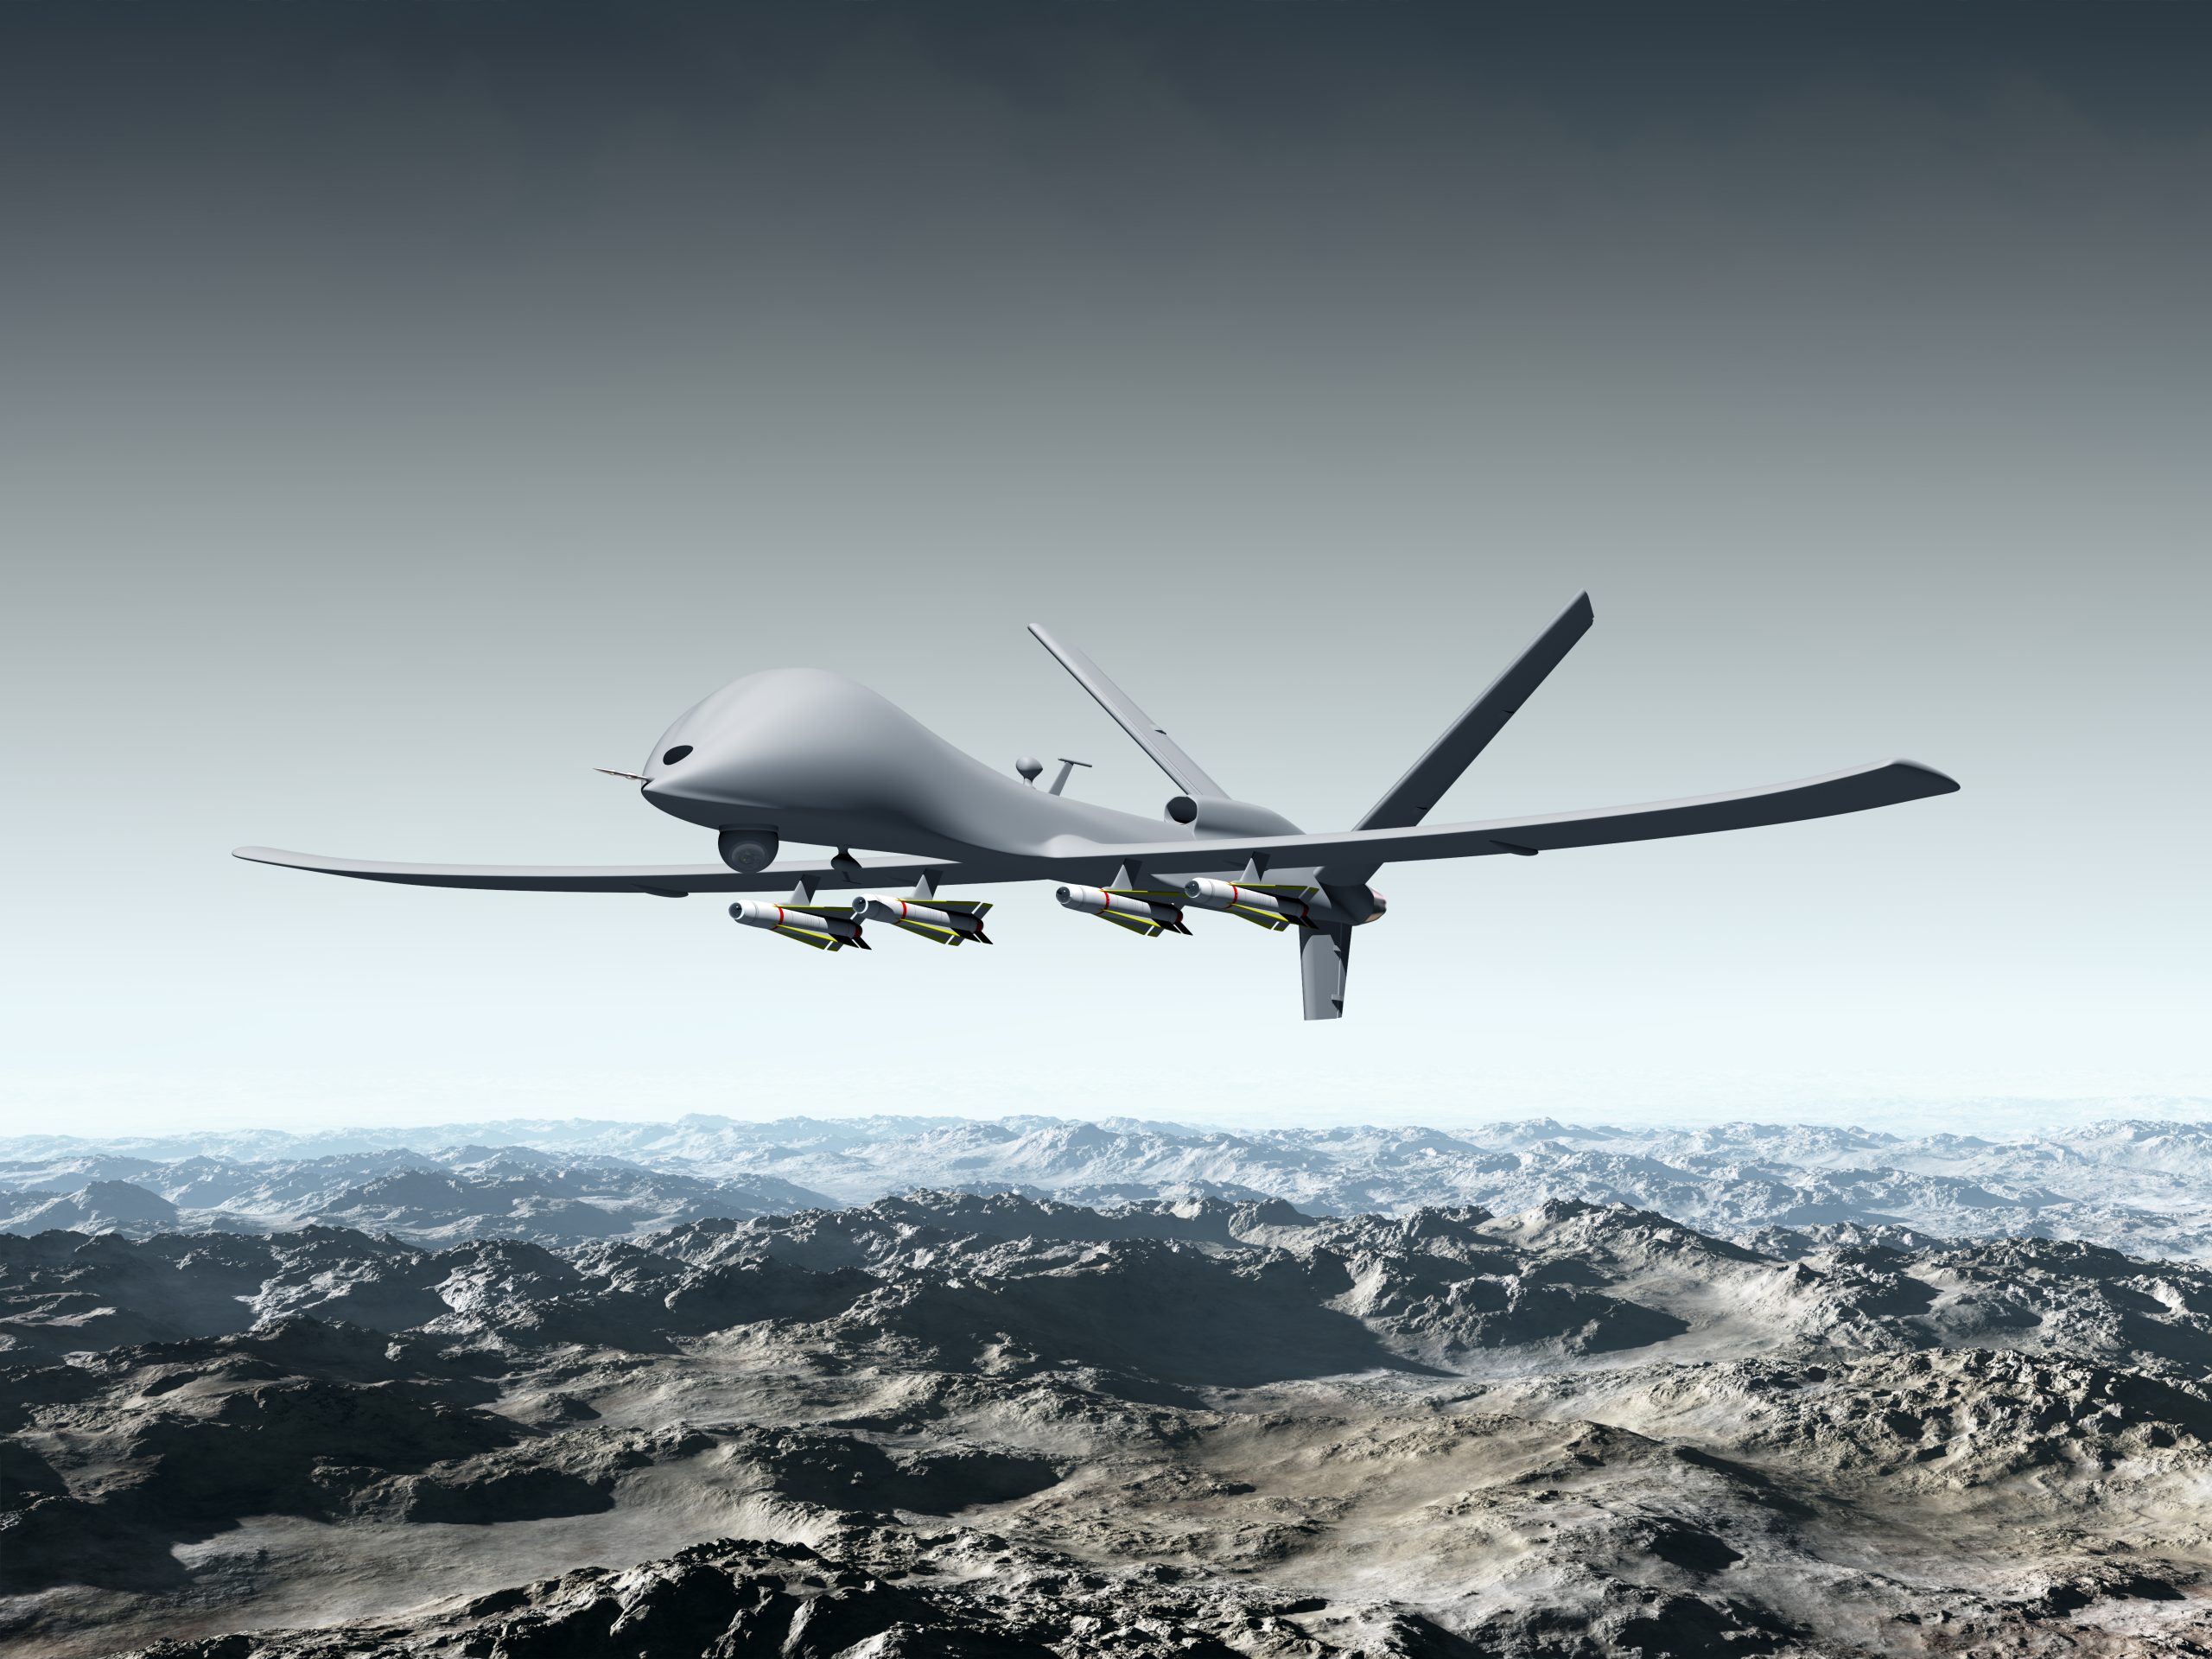 [:es] Drones militares y las nuevas reglas de la guerra[:]